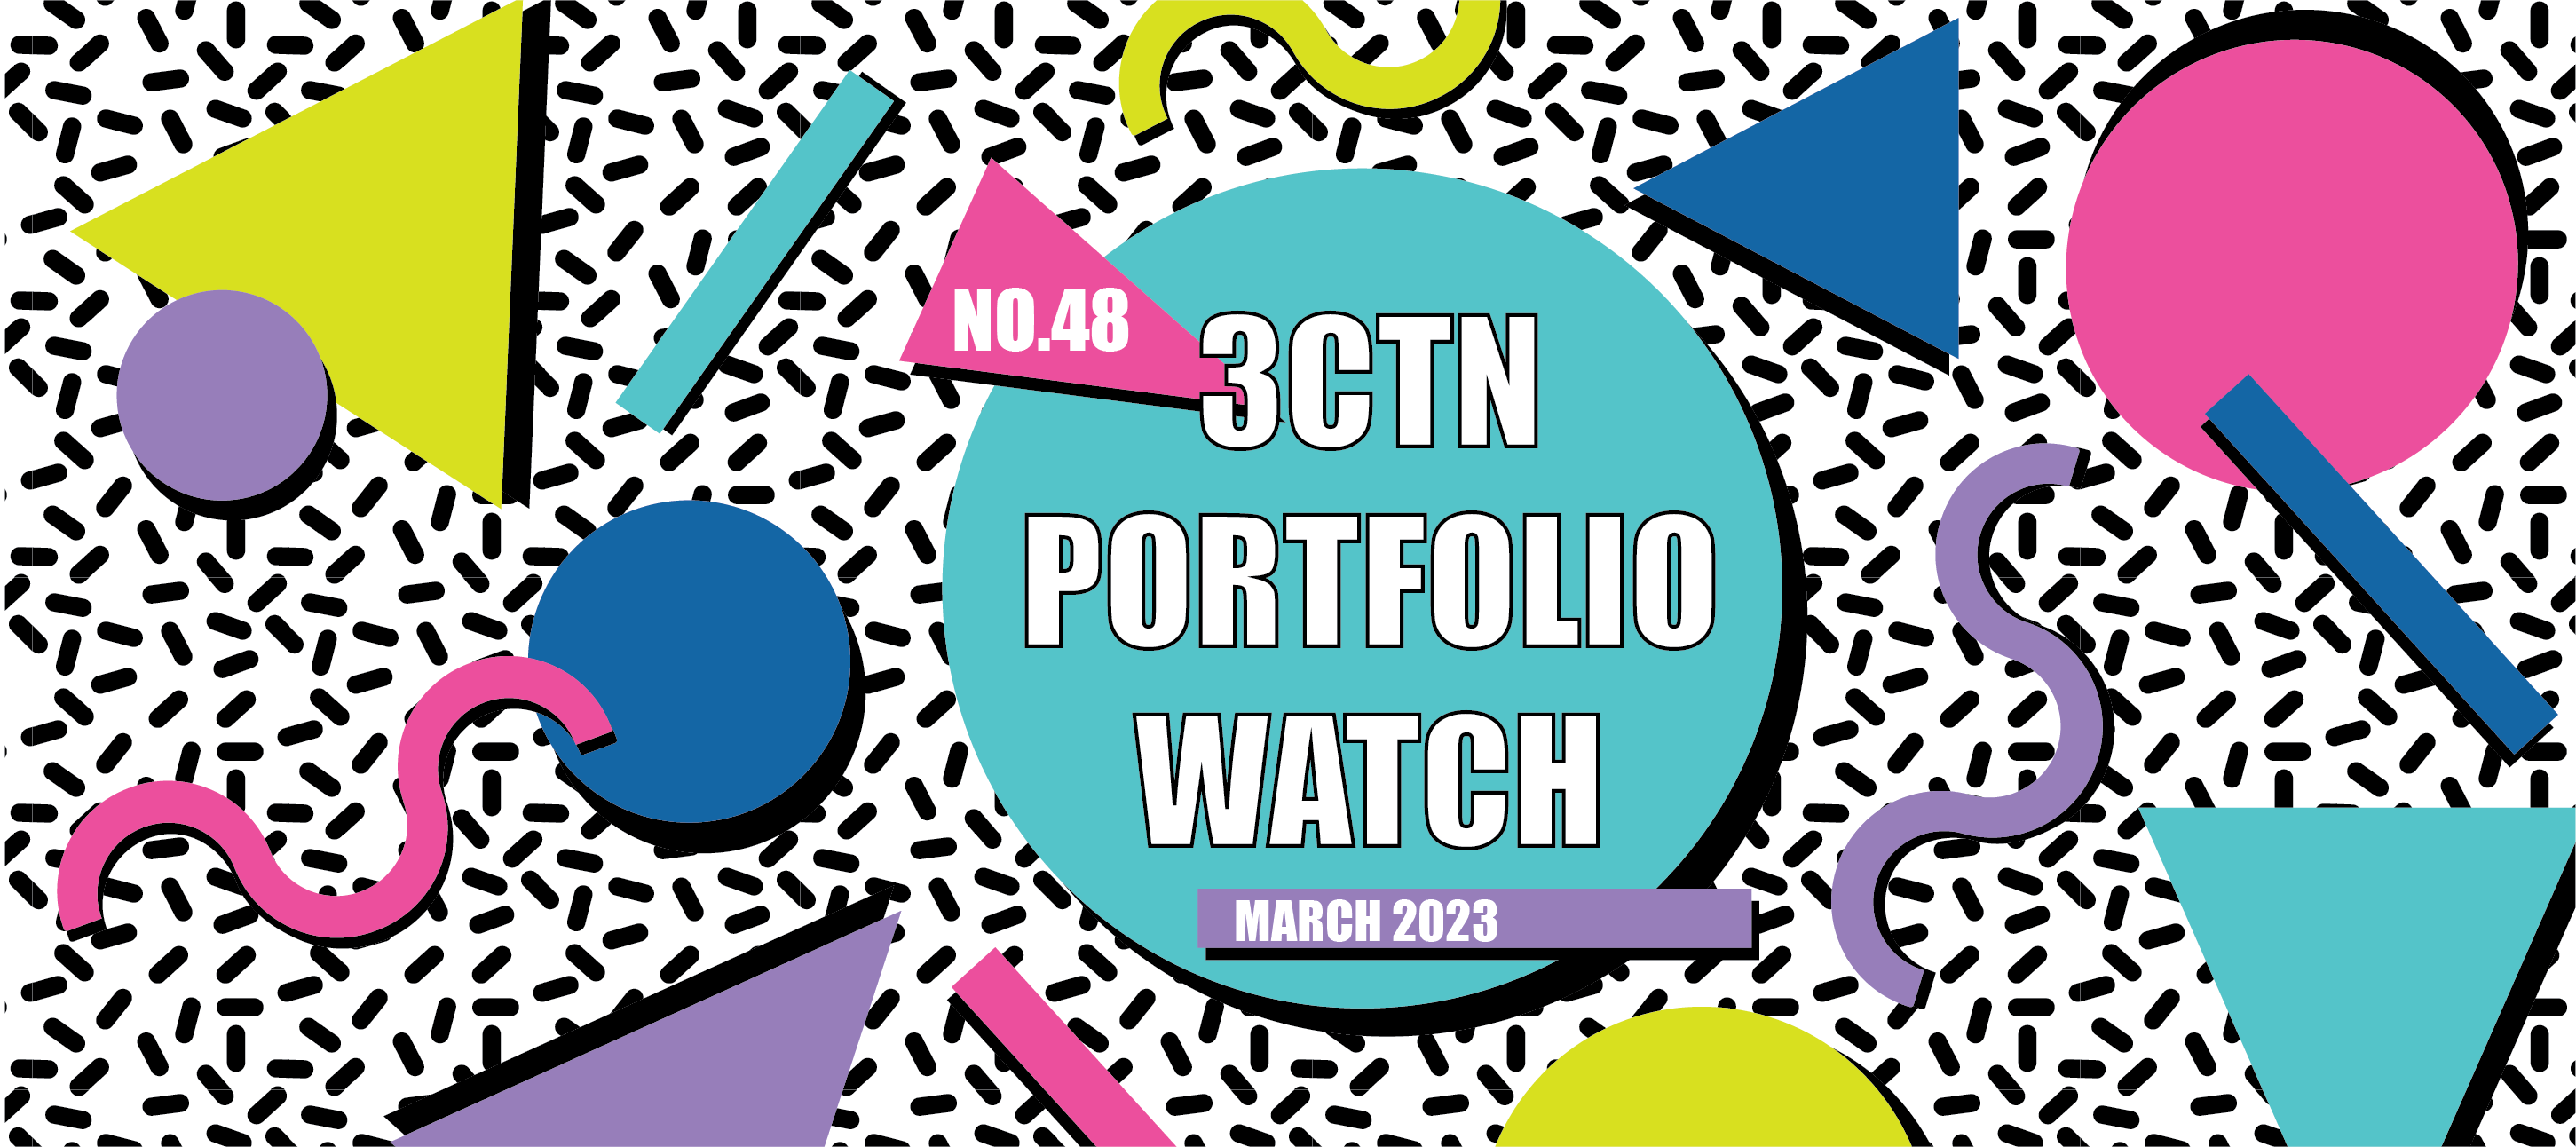 Portfolio Watch March 2023